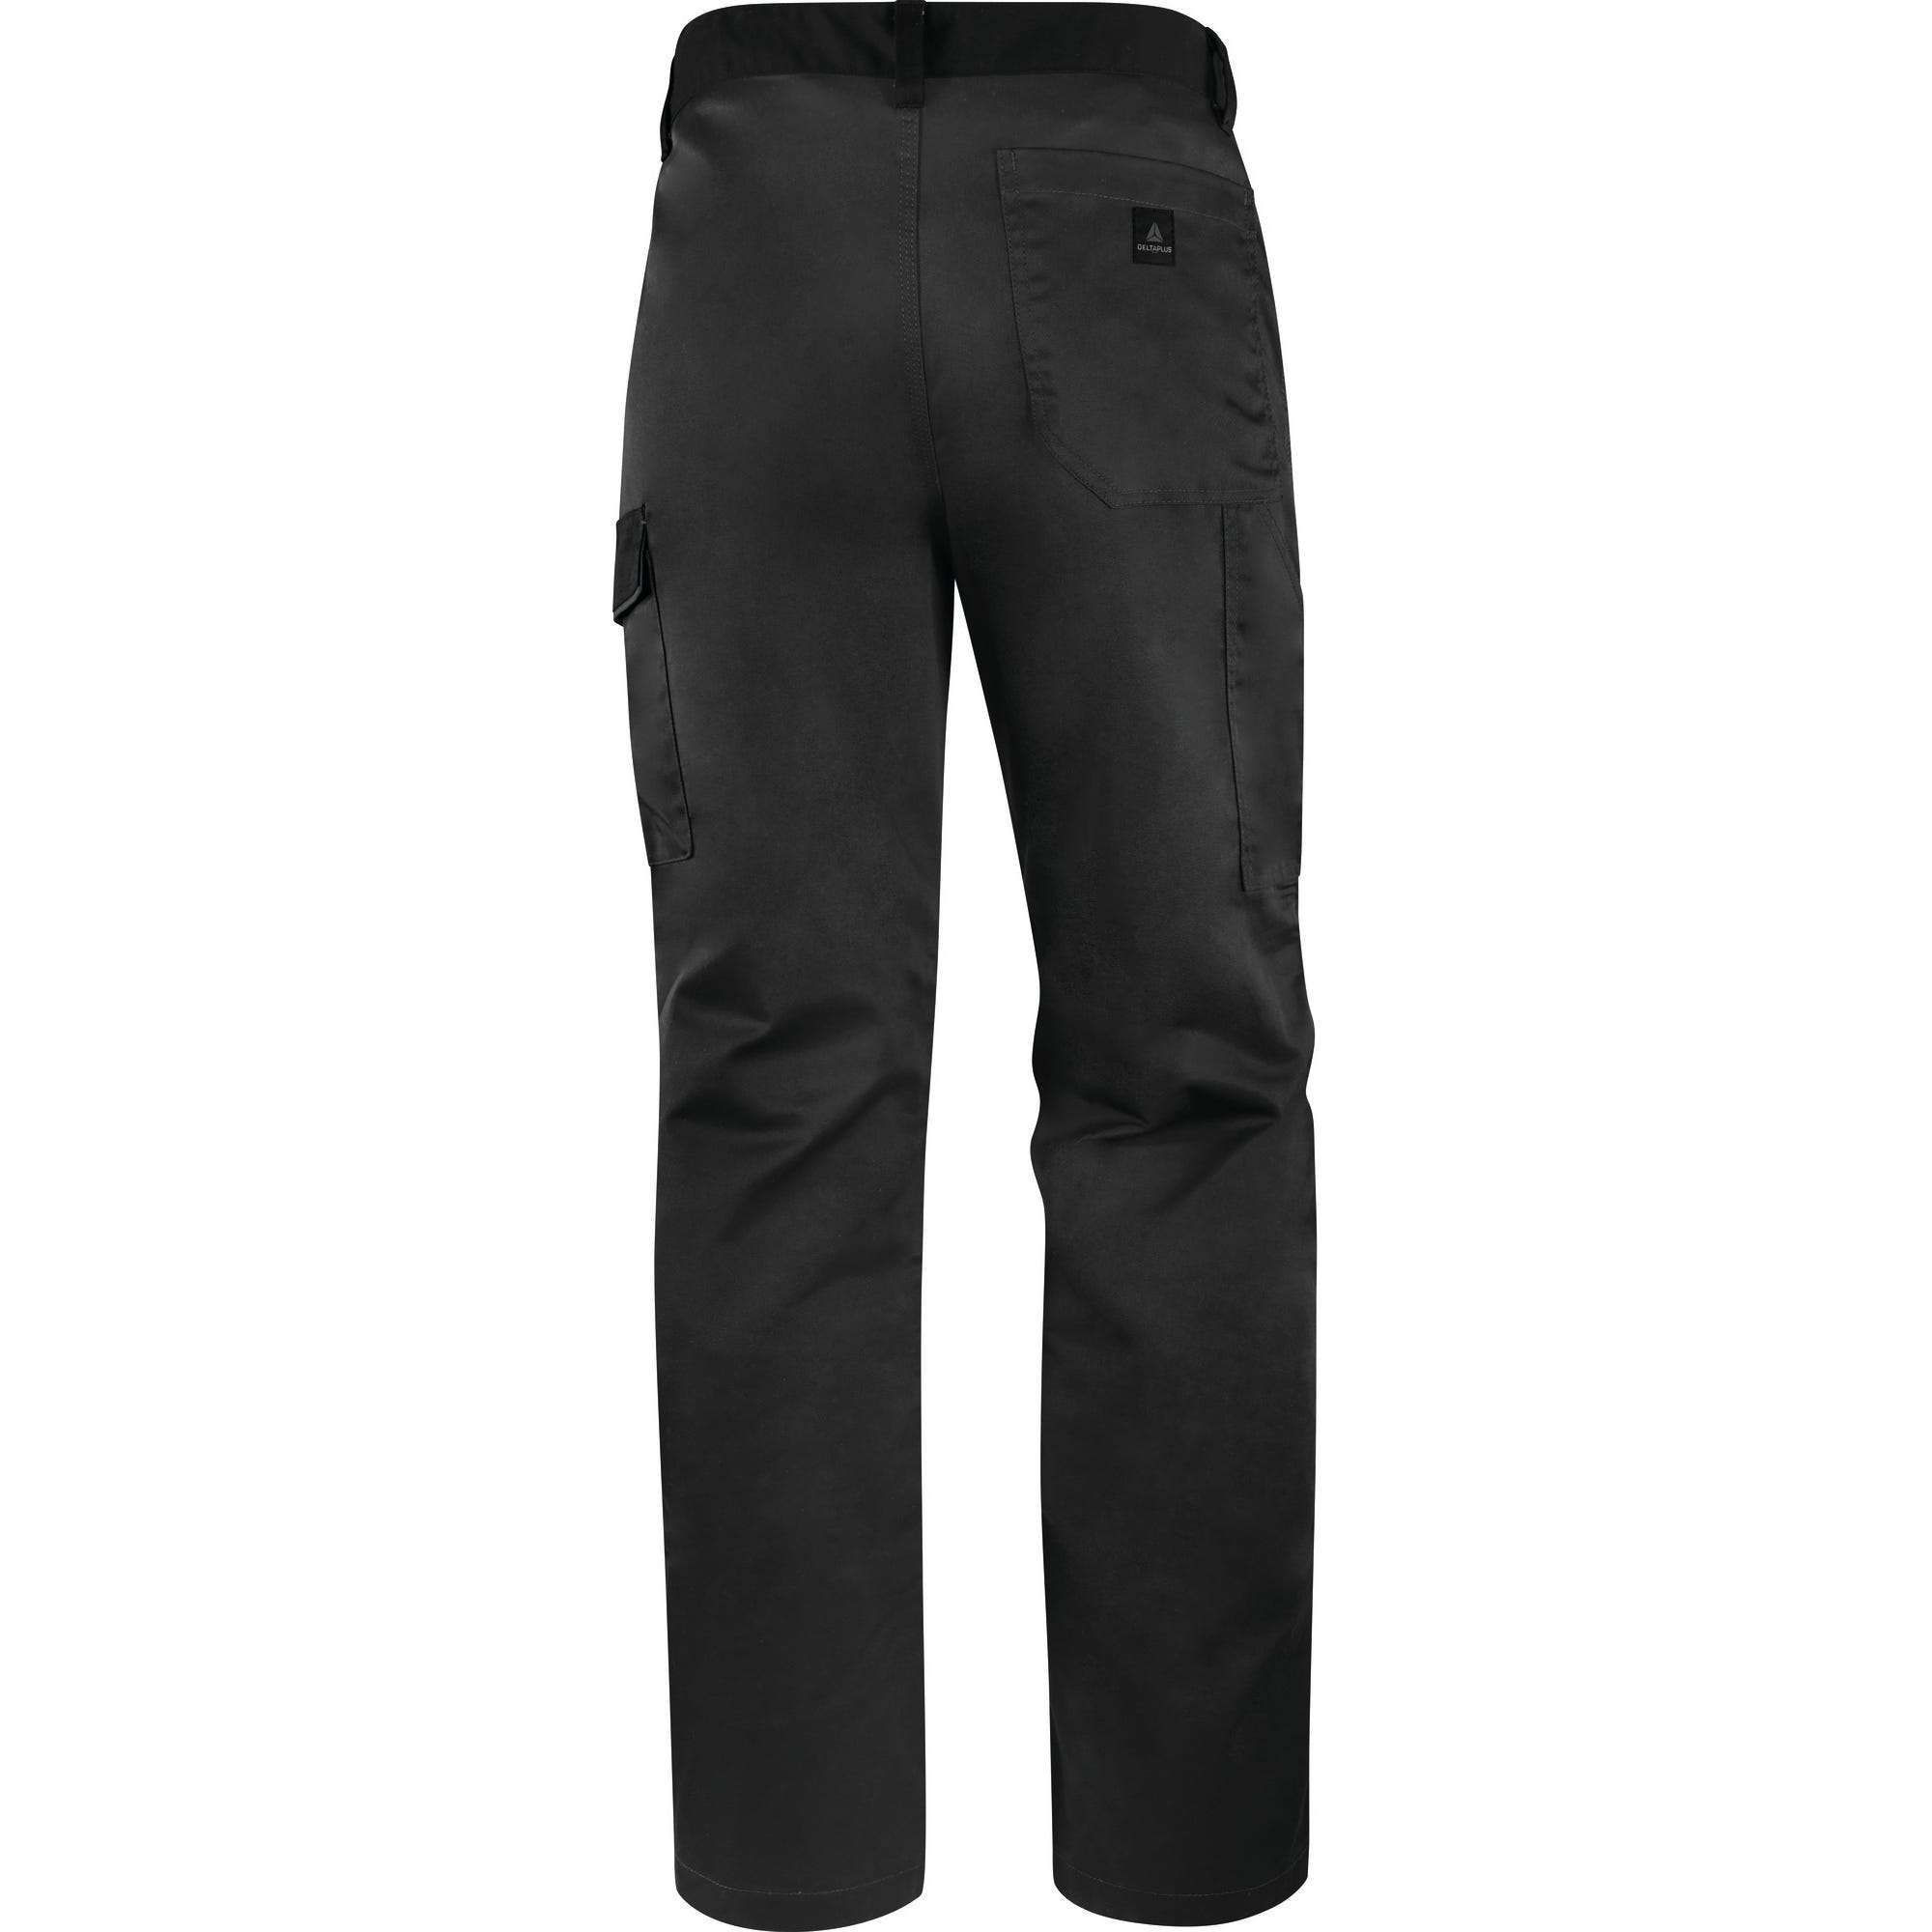 Pantalon de travail gris foncé T.L M1PA2 - DELTA PLUS 0